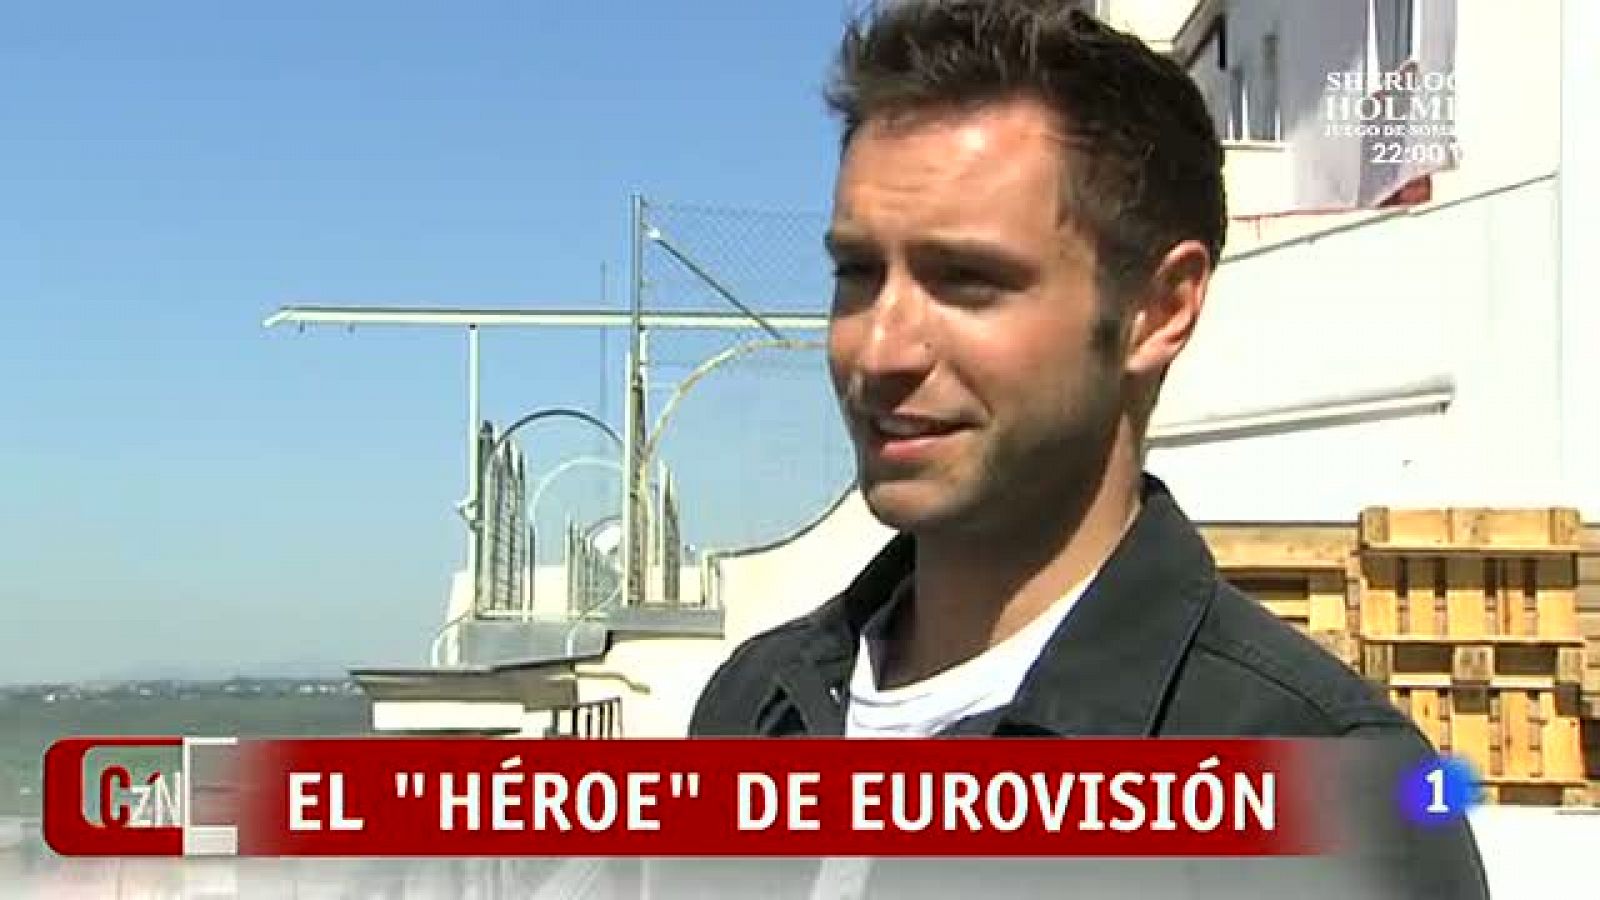 D Corazón: Mans Zelmerlow, el "Héroe" de Eurovisión | RTVE Play